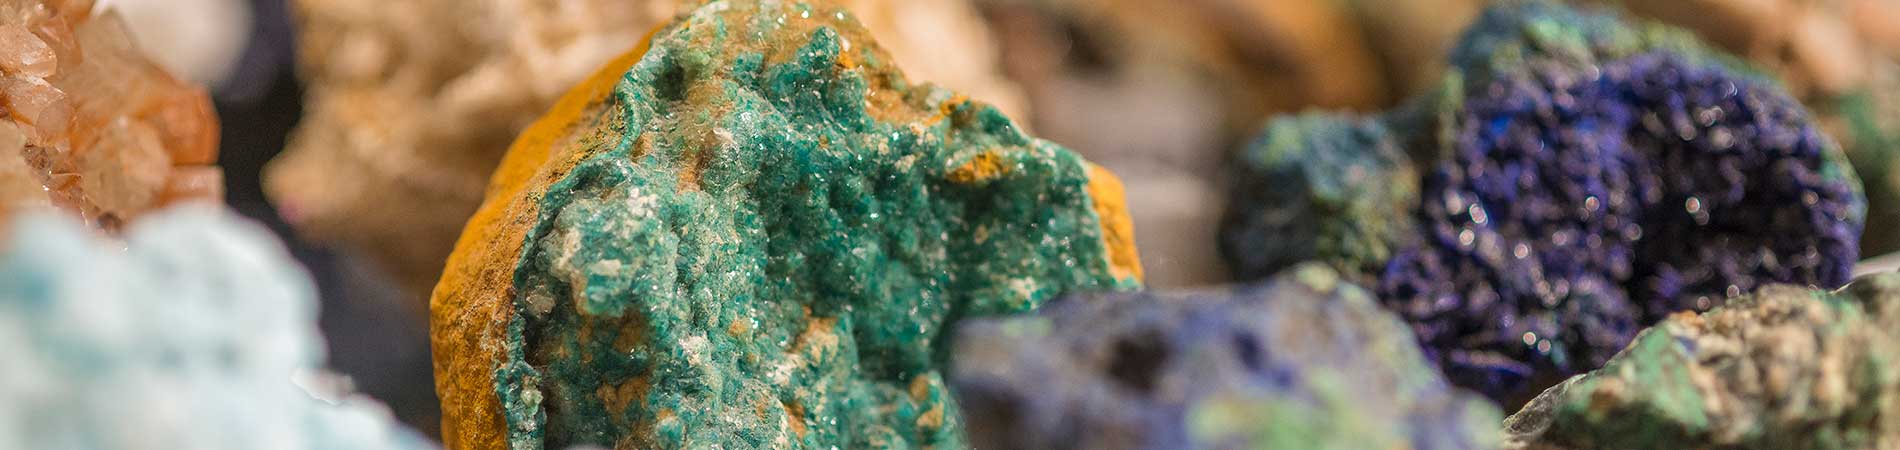 adrian-smith-minerals-1900x450.jpg